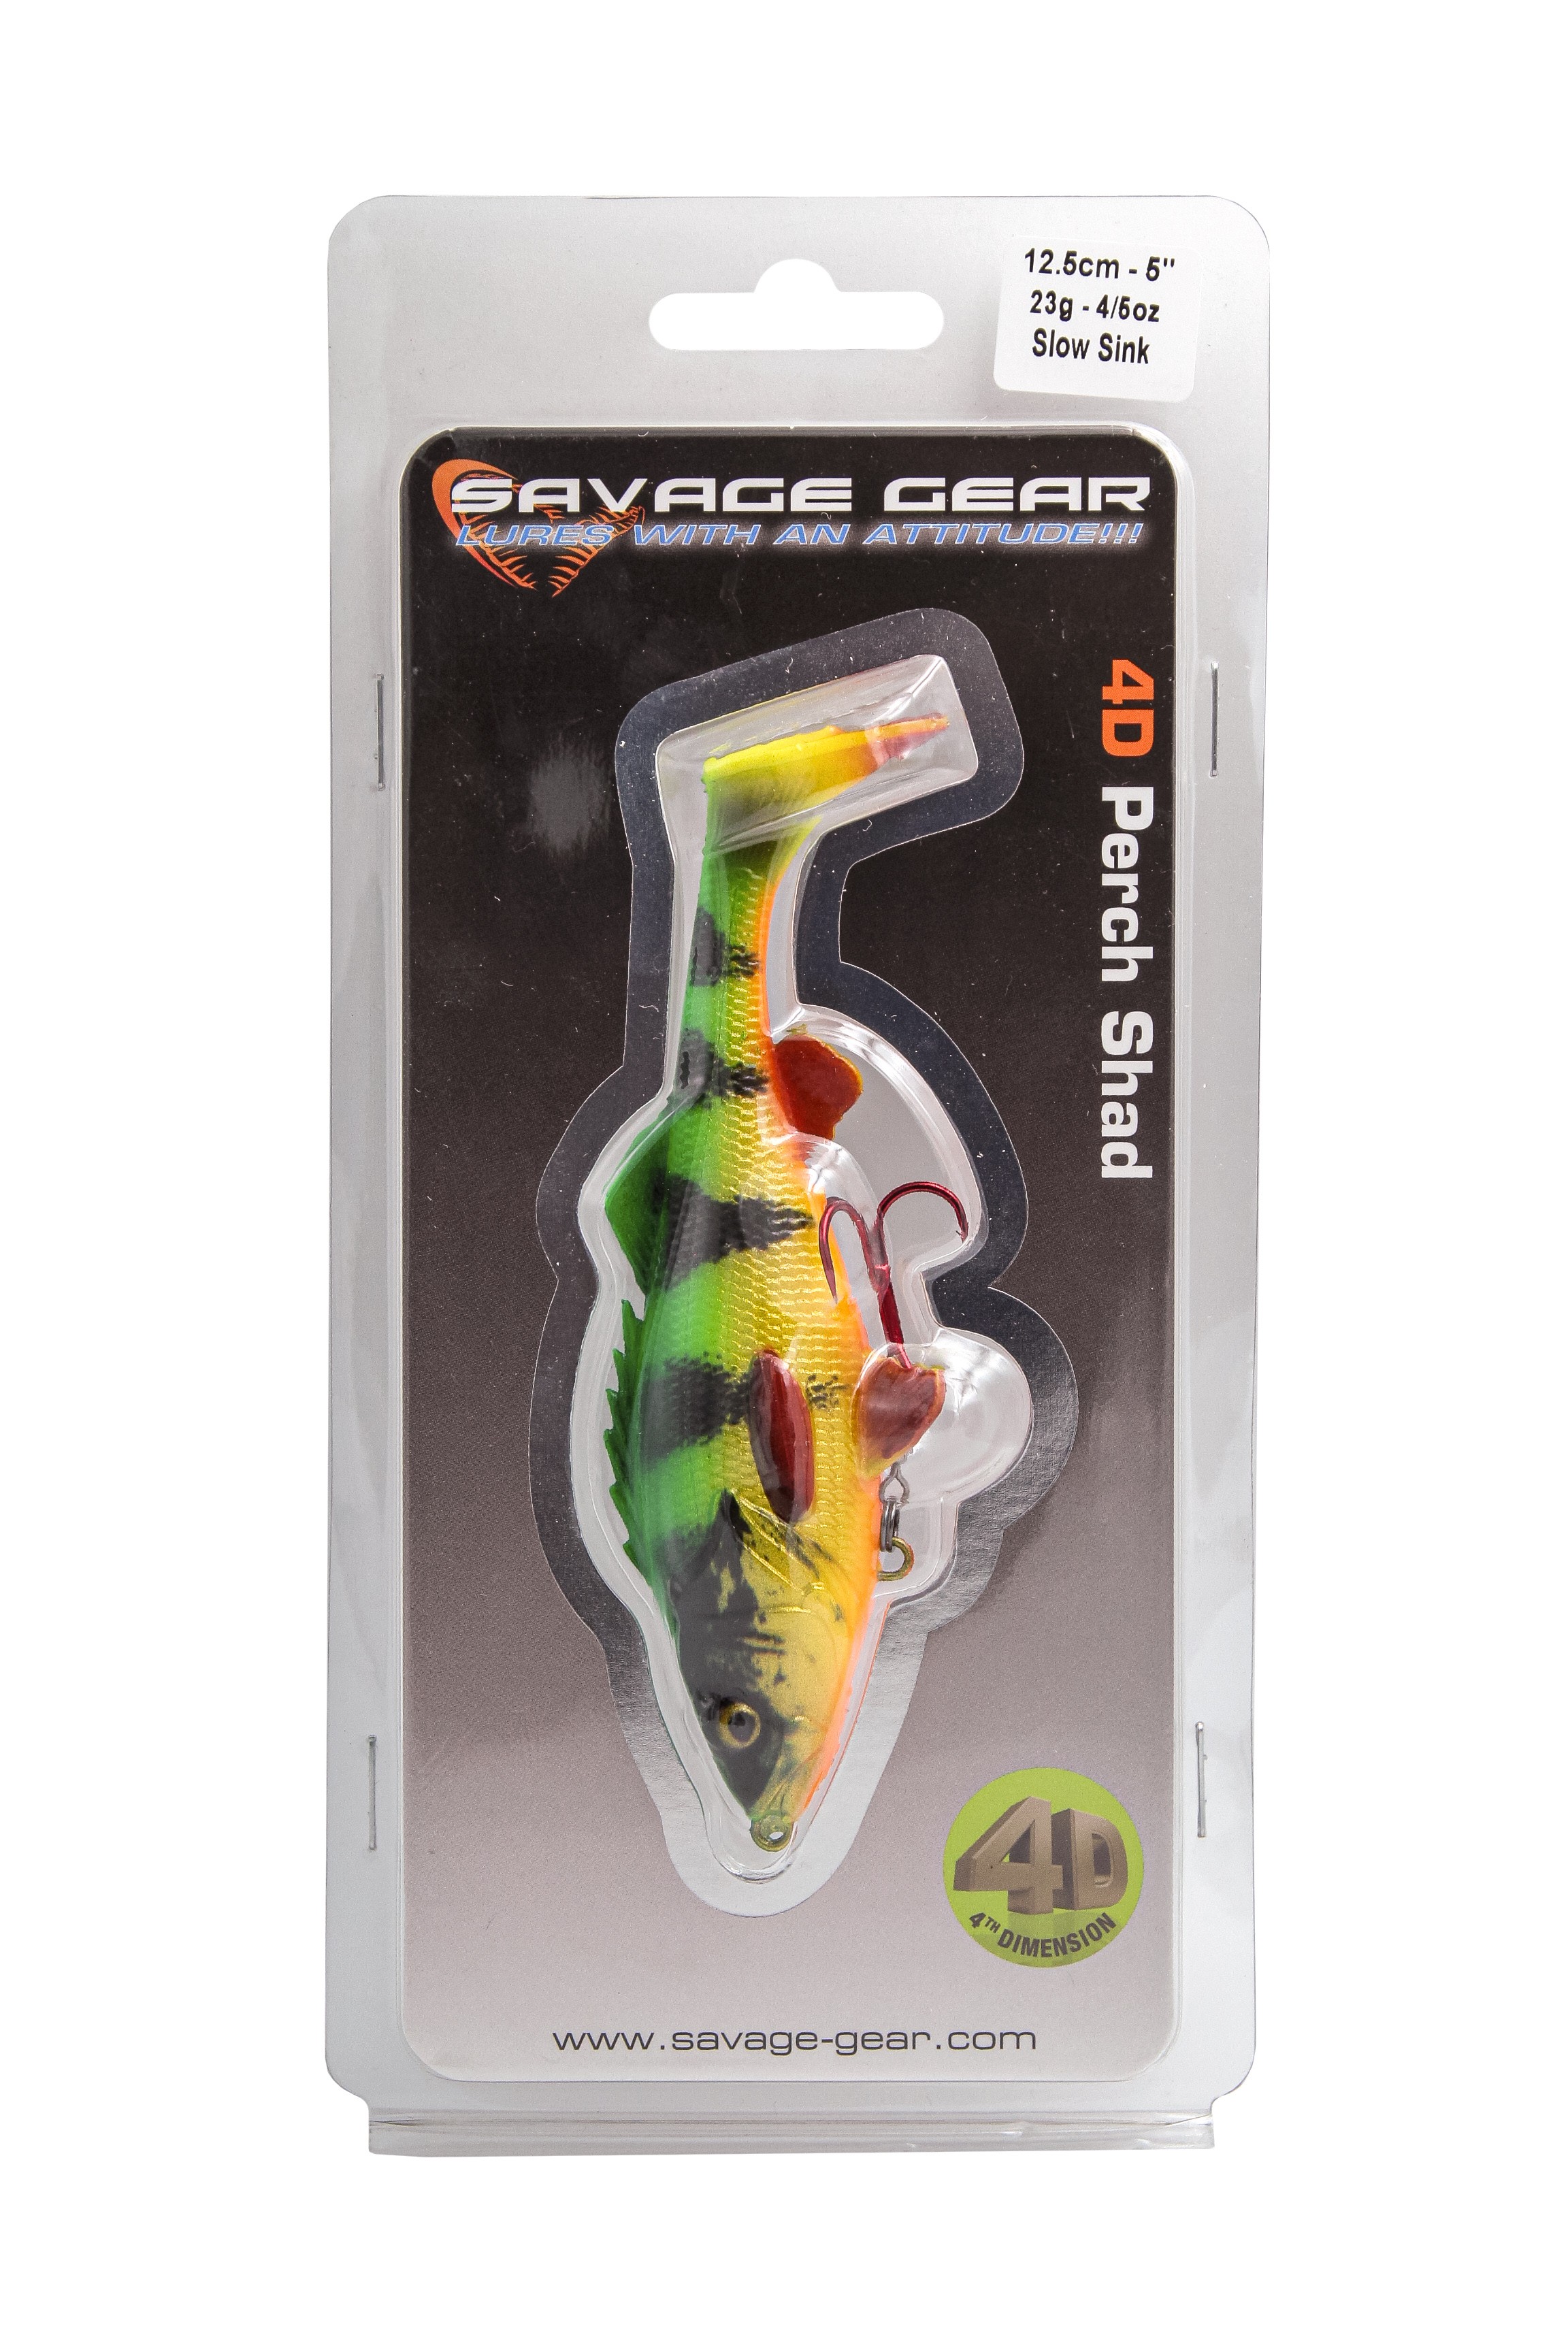 Приманка Savage Gear 4D Perch shad 12,5см 23гр SS 02 firetiger - фото 1